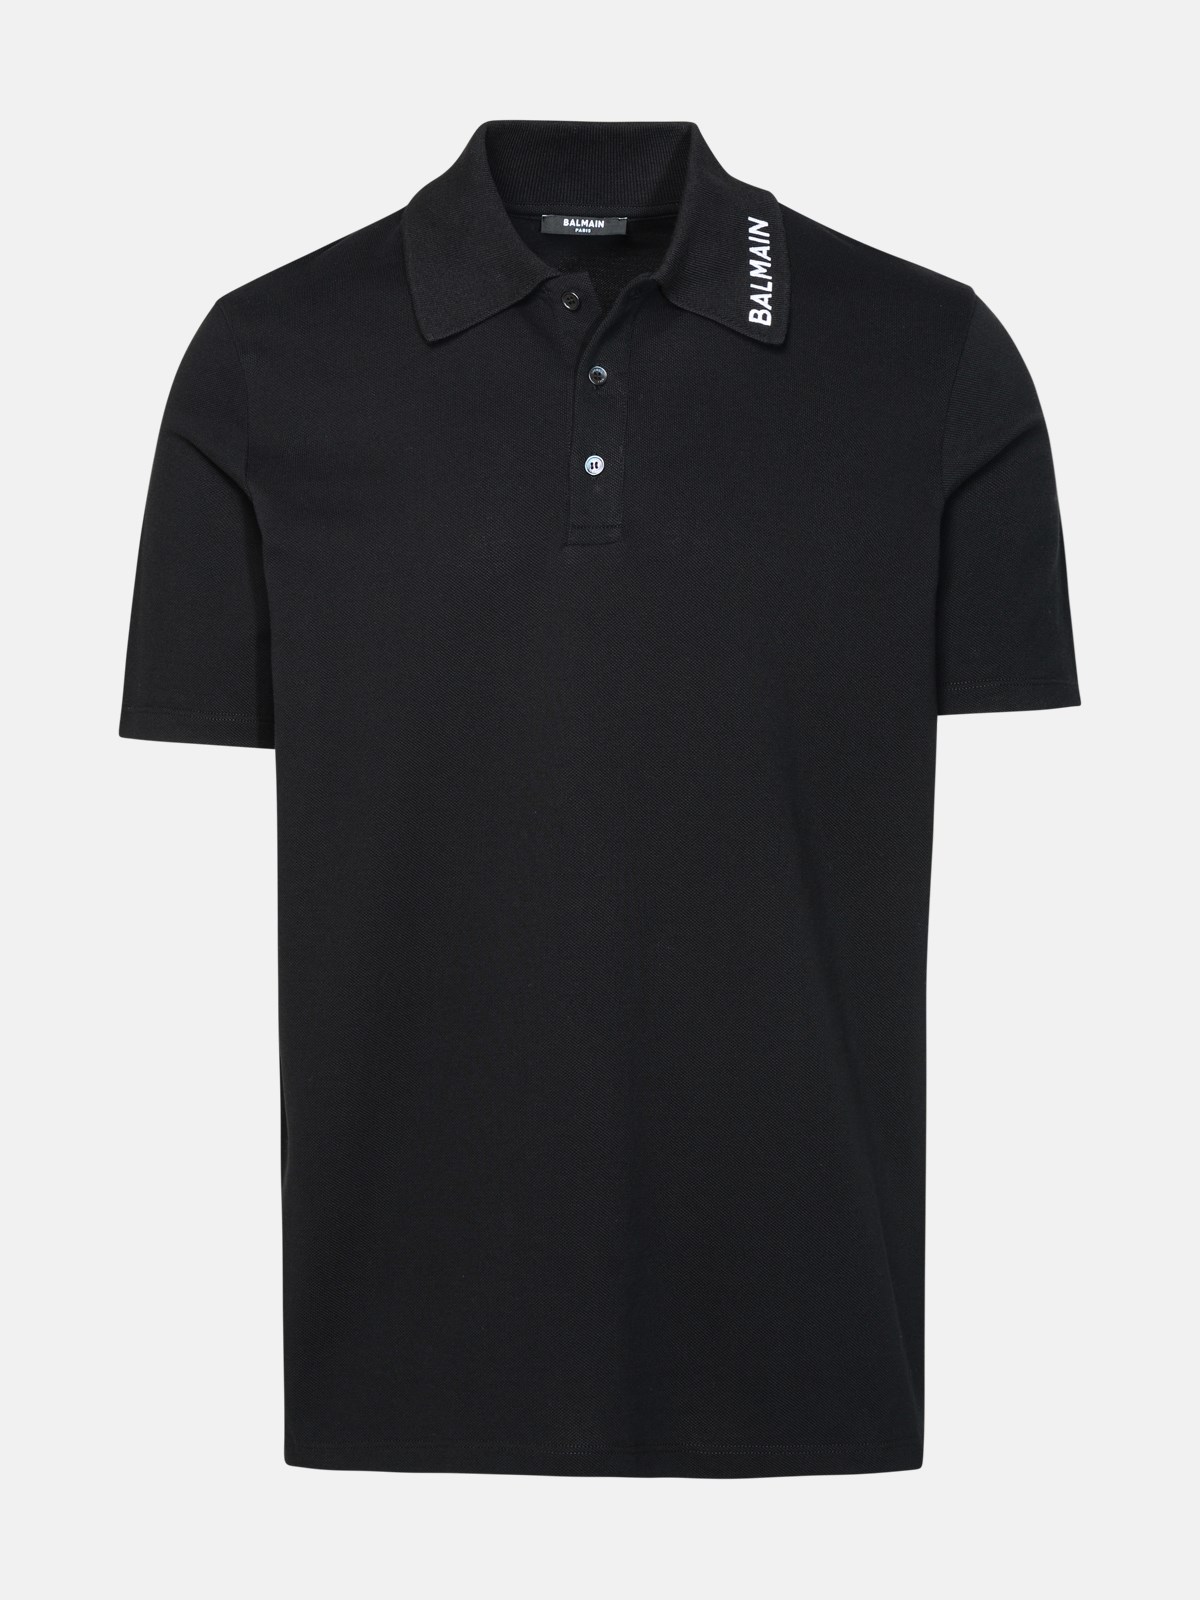 Balmain Black Cotton Polo Shirt